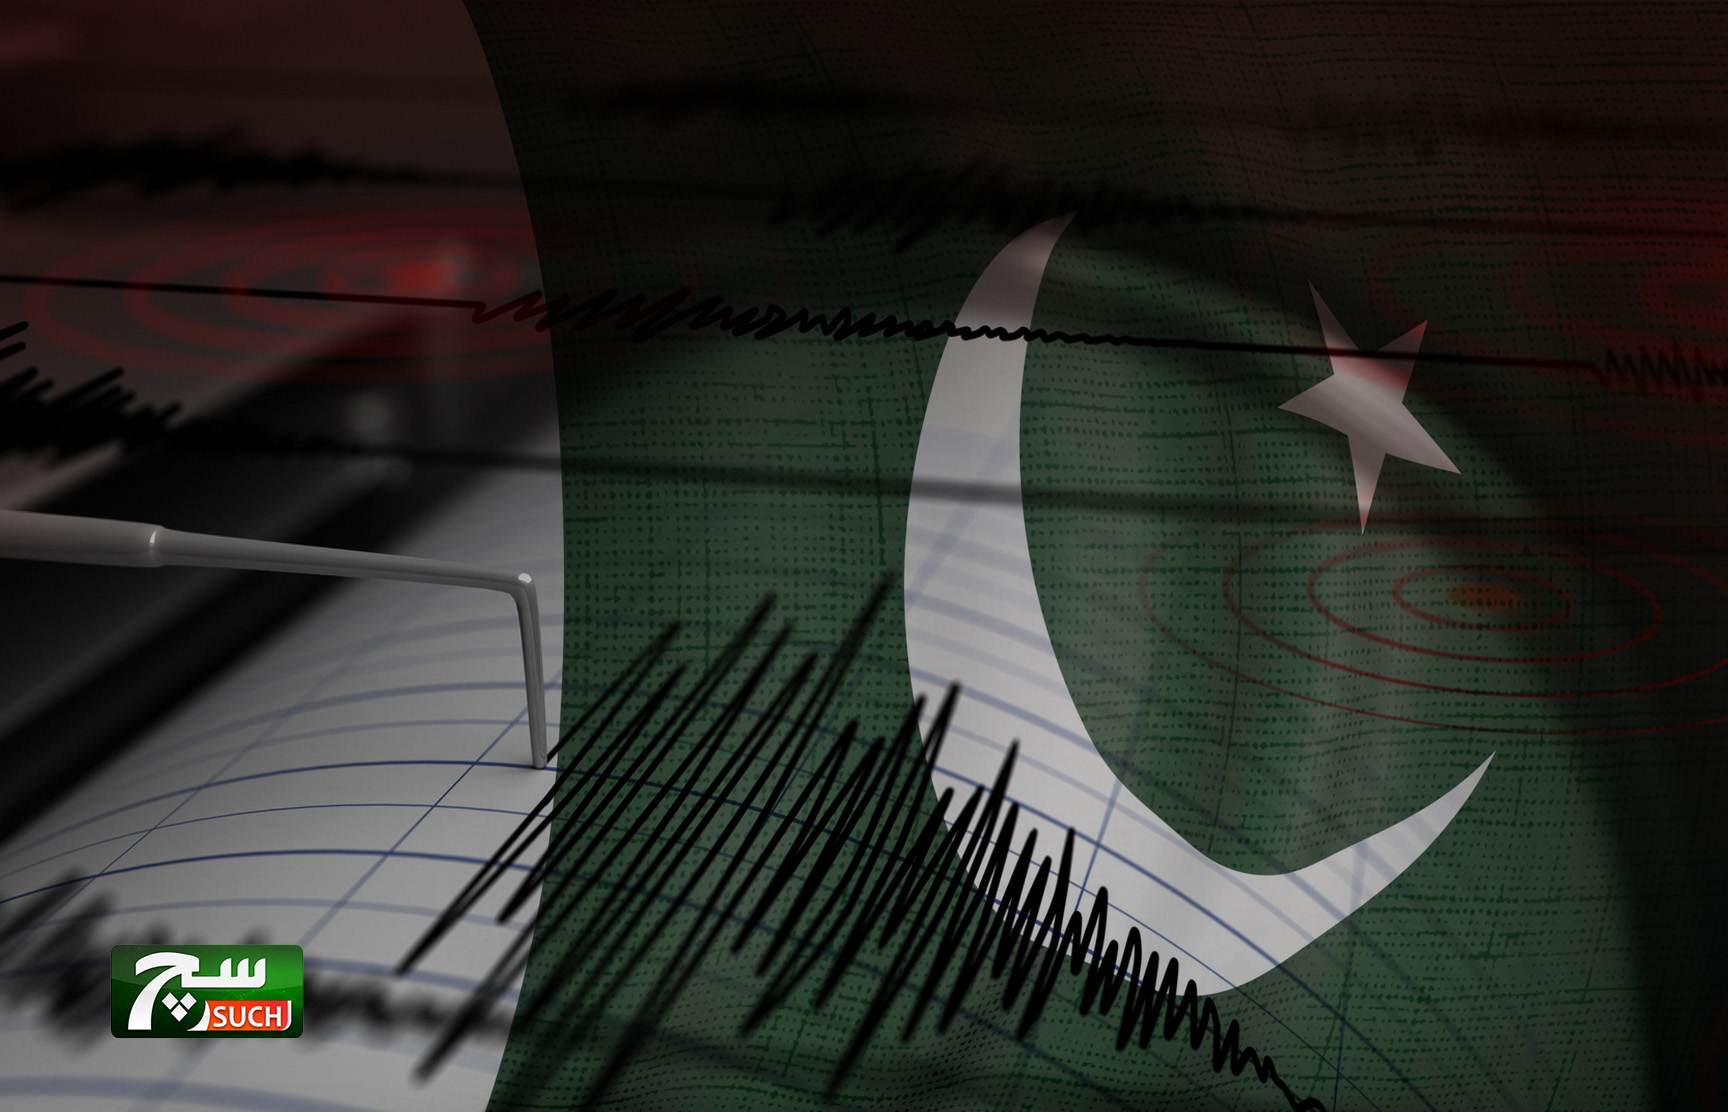 زلزال بقوة 4.2 درجات يضرب شمال باكستان